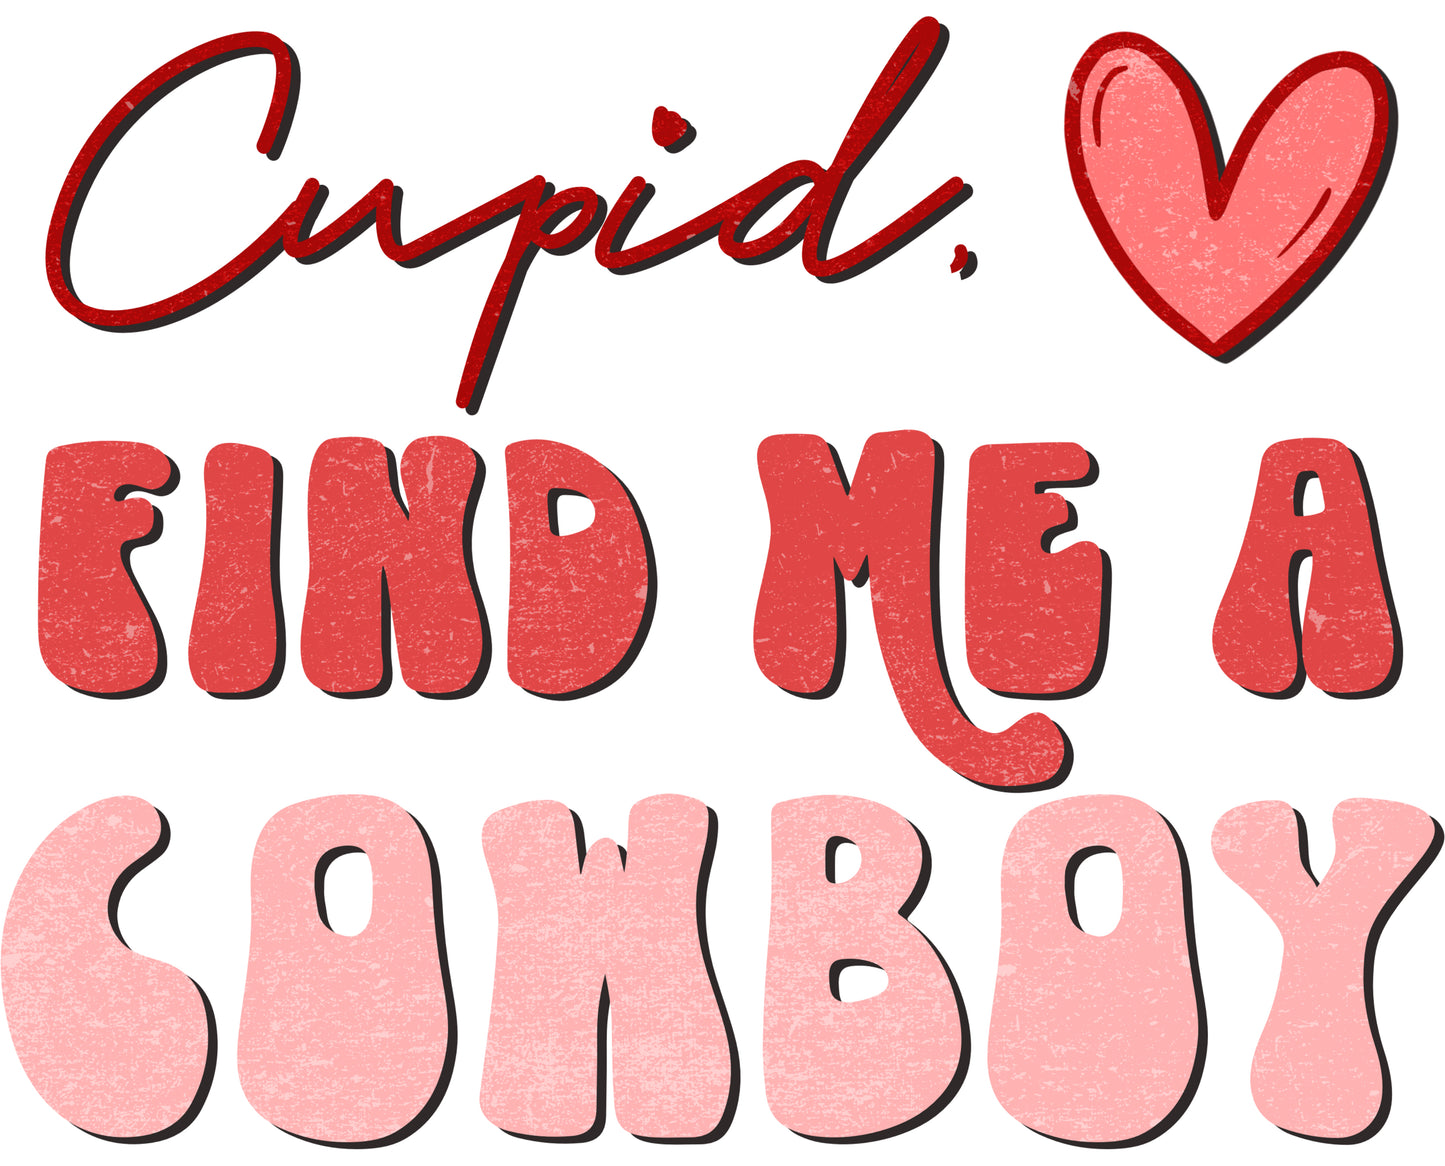 Cupid, Send Me a Cowboy